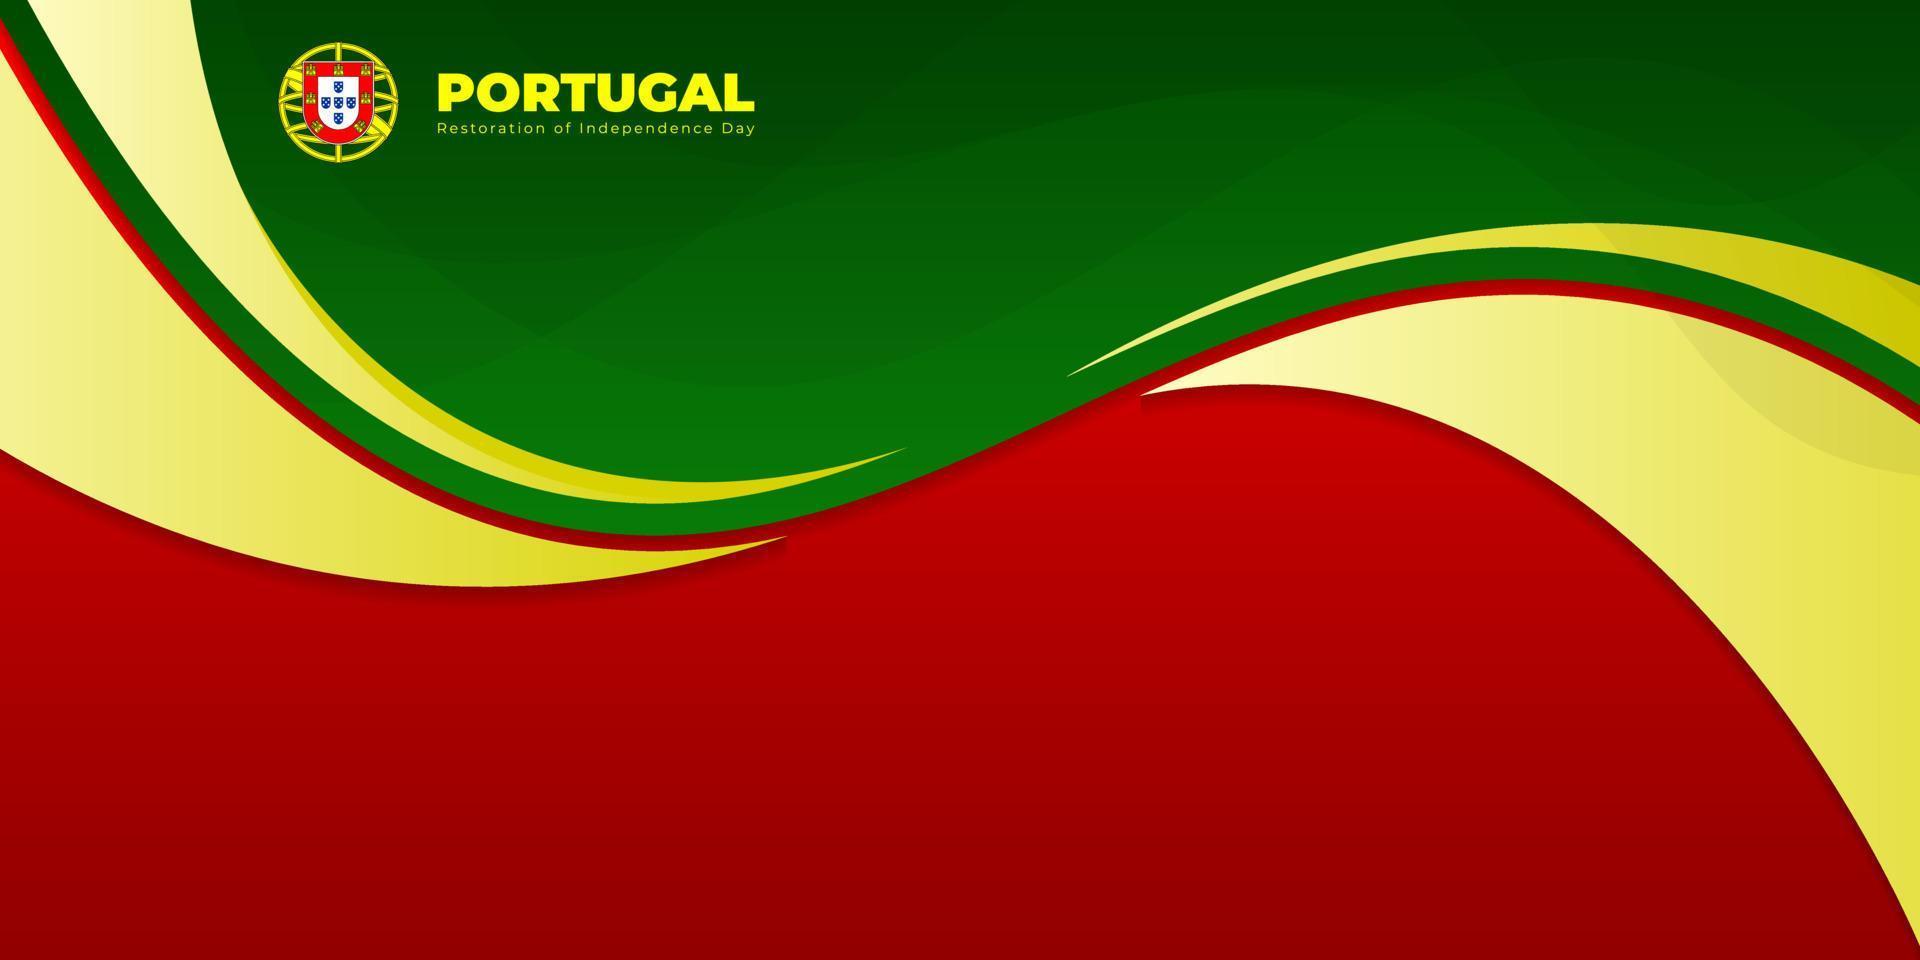 golvende rode en groene abstracte achtergrond. Portugal restauratie onafhankelijkheidsdag sjabloonontwerp. vector